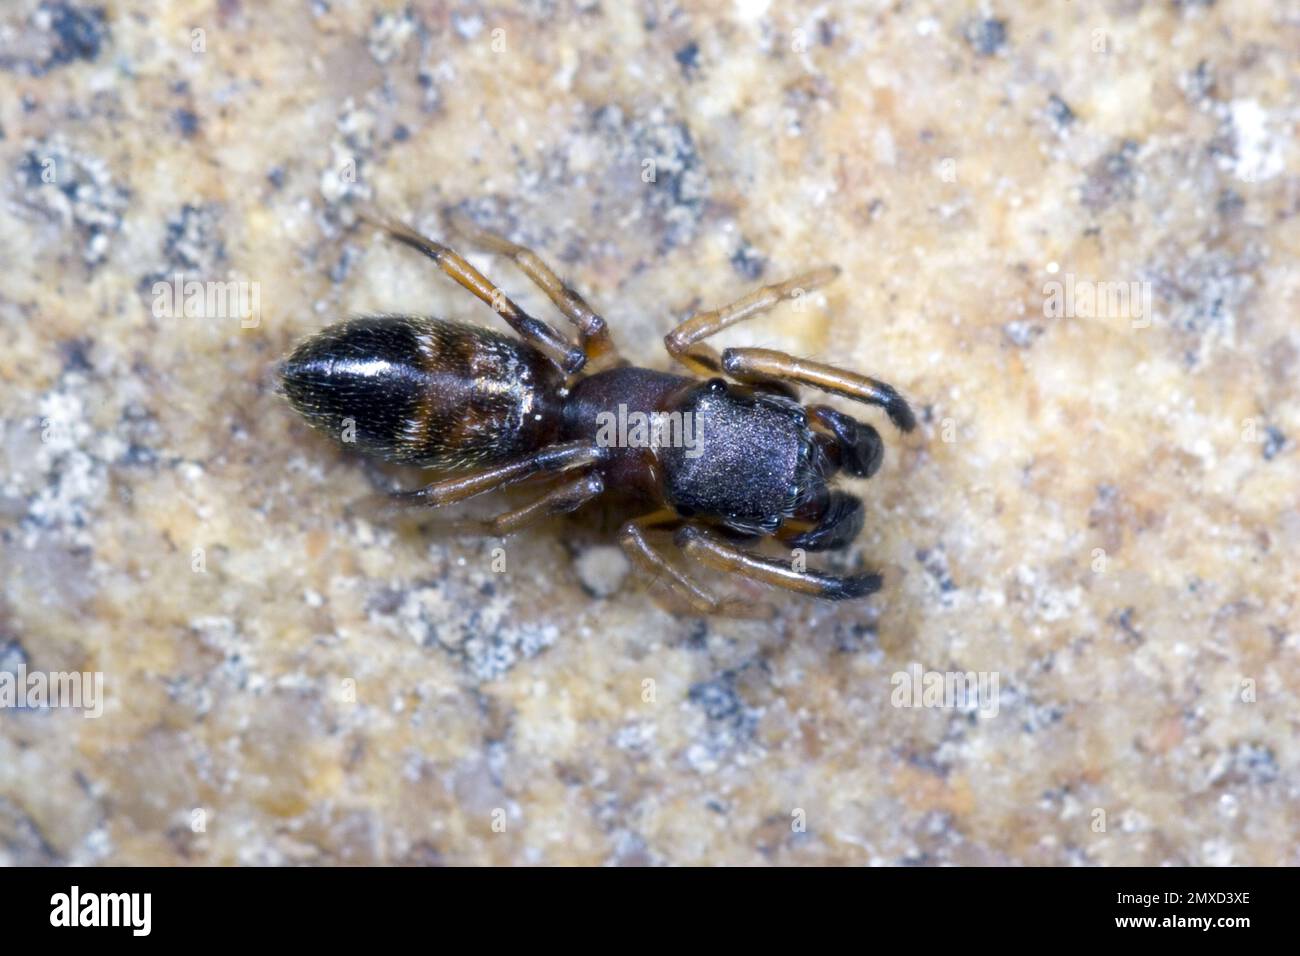 Araignée sauteuse ANT, araignée Ant (Myrmarachne formicaria), sur une pierre, vue dorsale, Allemagne Banque D'Images